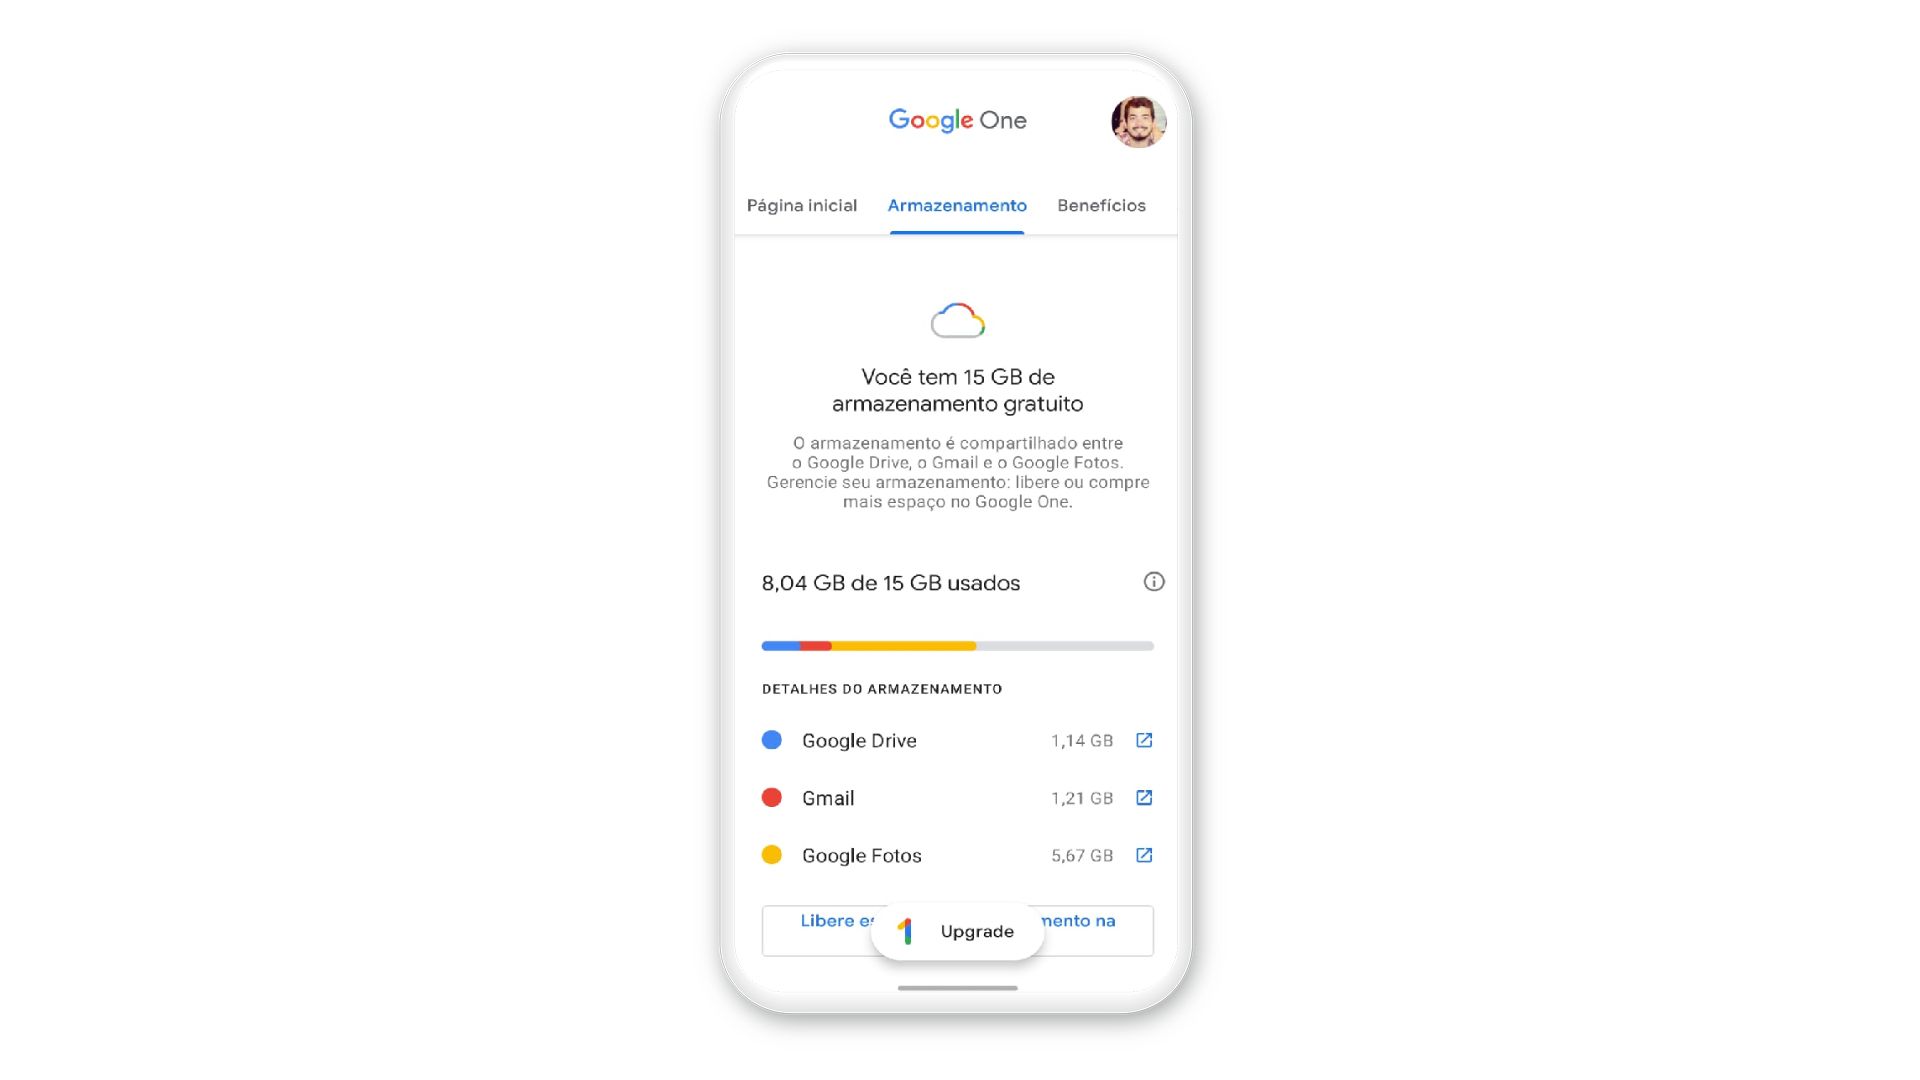 Google One planos e preços: como dividir e economizar?